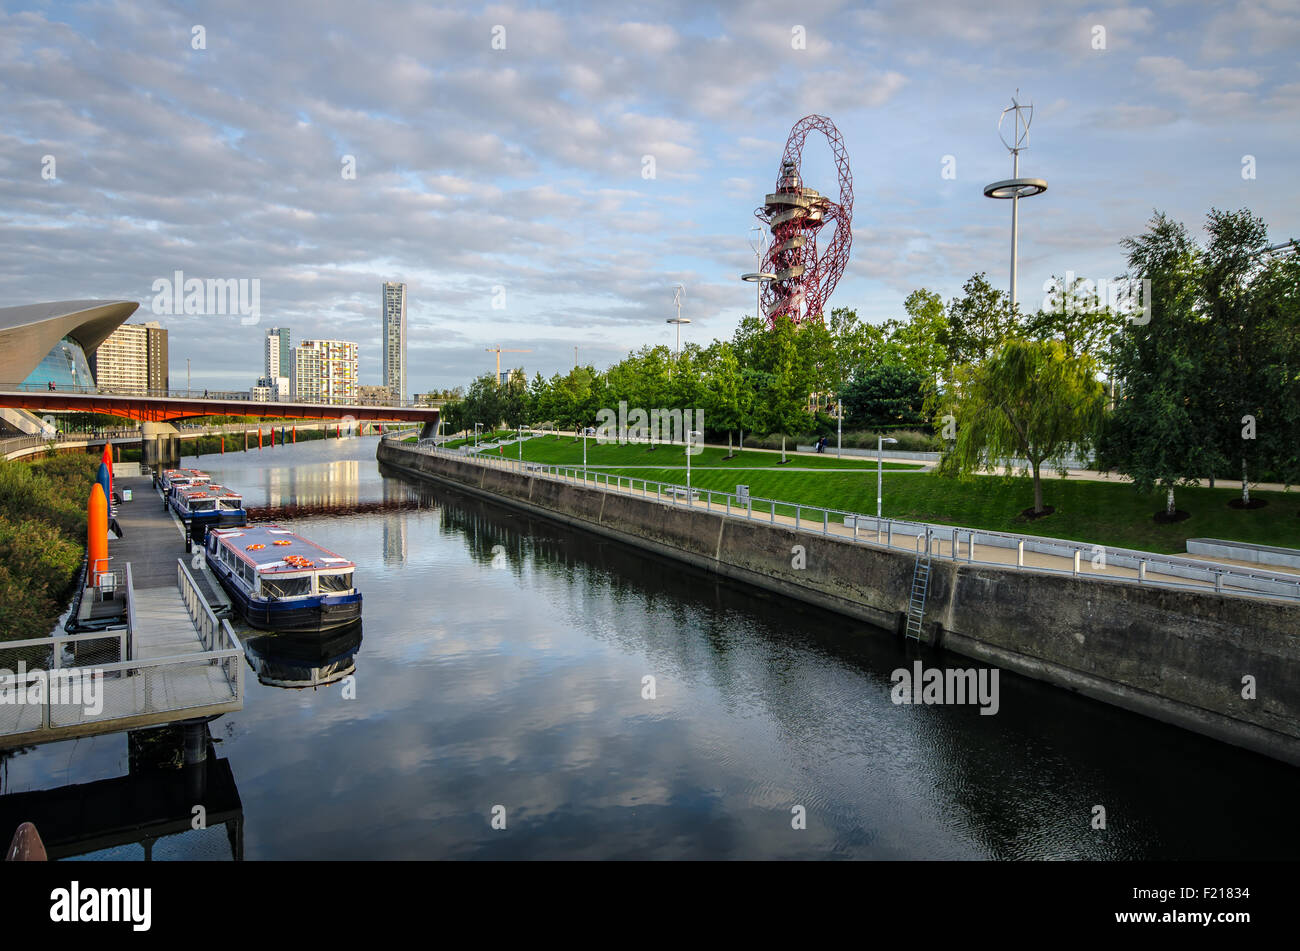 Parc olympique Queen Elizabeth, Londres, stade, tour et canal britanniques. Construit pour les Jeux Olympiques de Londres 2012. Lieu Banque D'Images